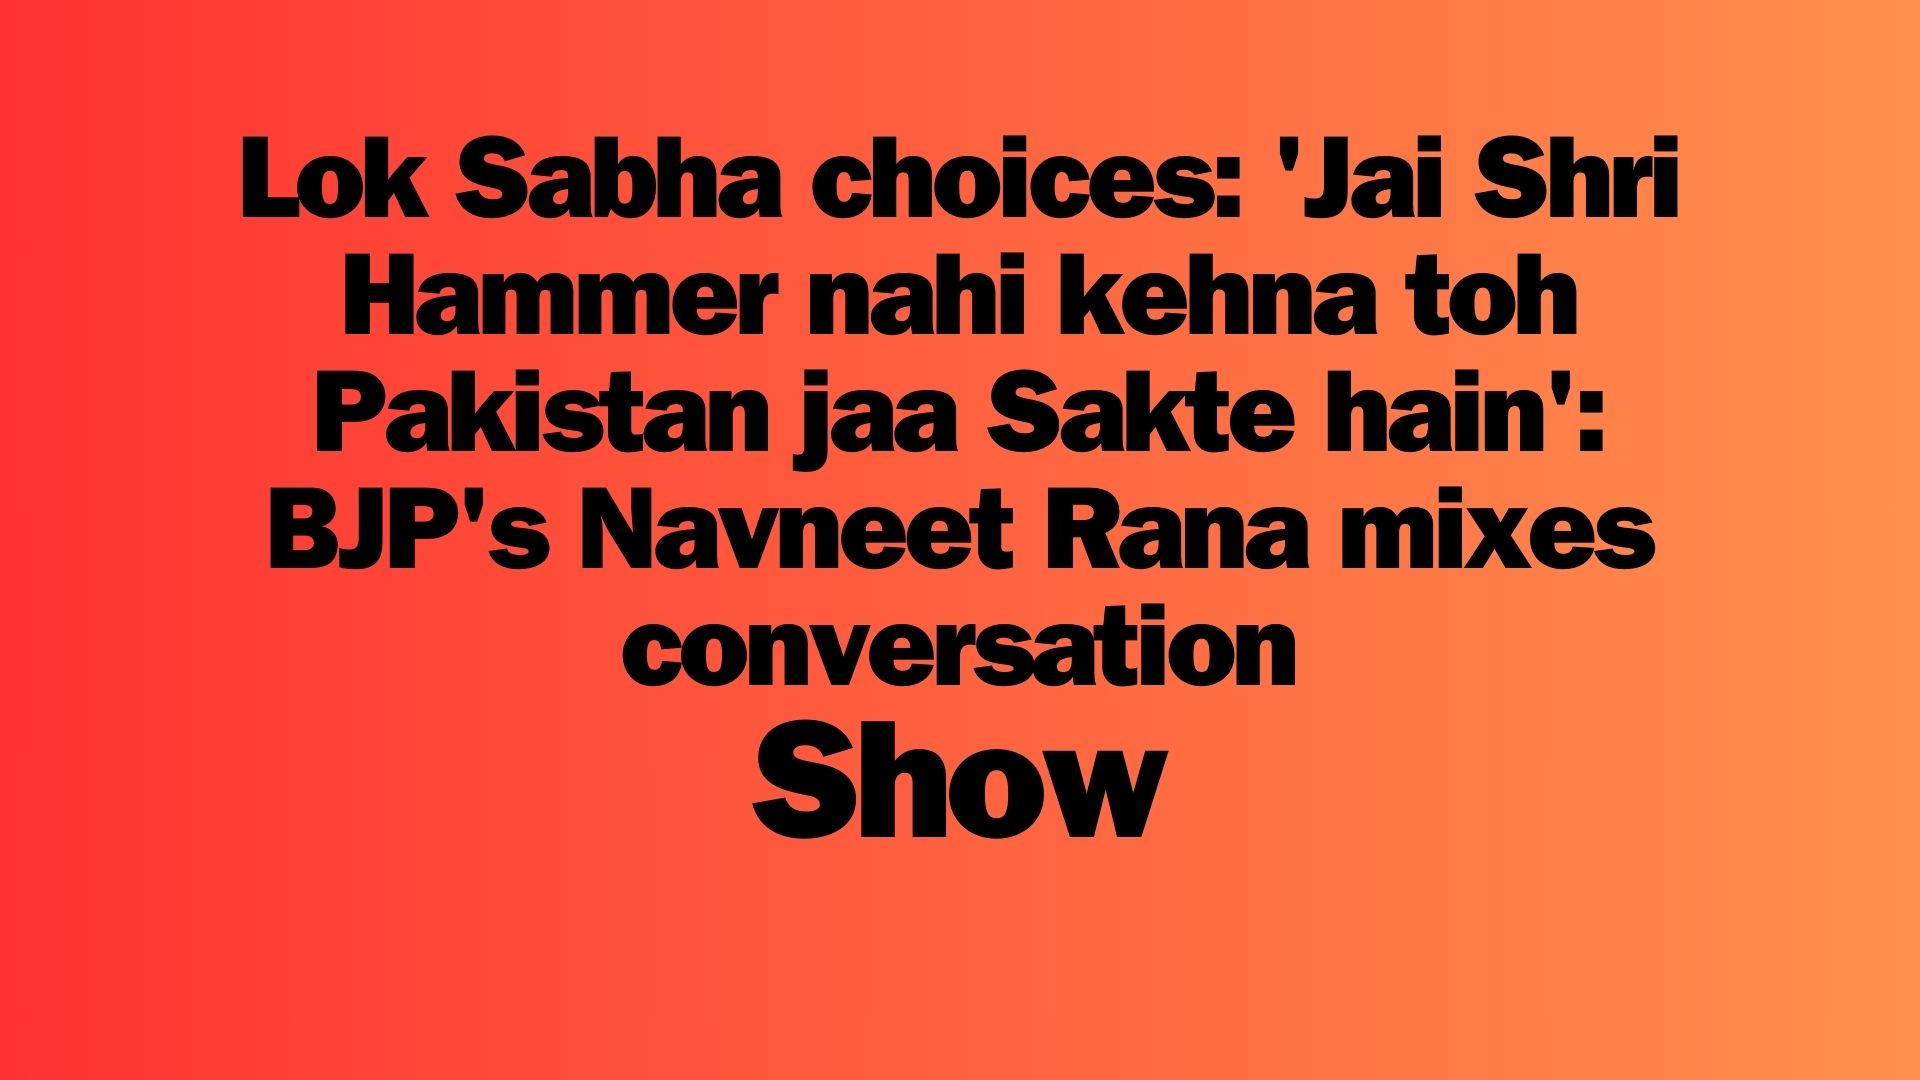 Lok Sabha choices Jai Shri Hammer nahi kehna toh Pakistan jaa Sakte hain BJP’s Navneet Rana mixes conversation Show